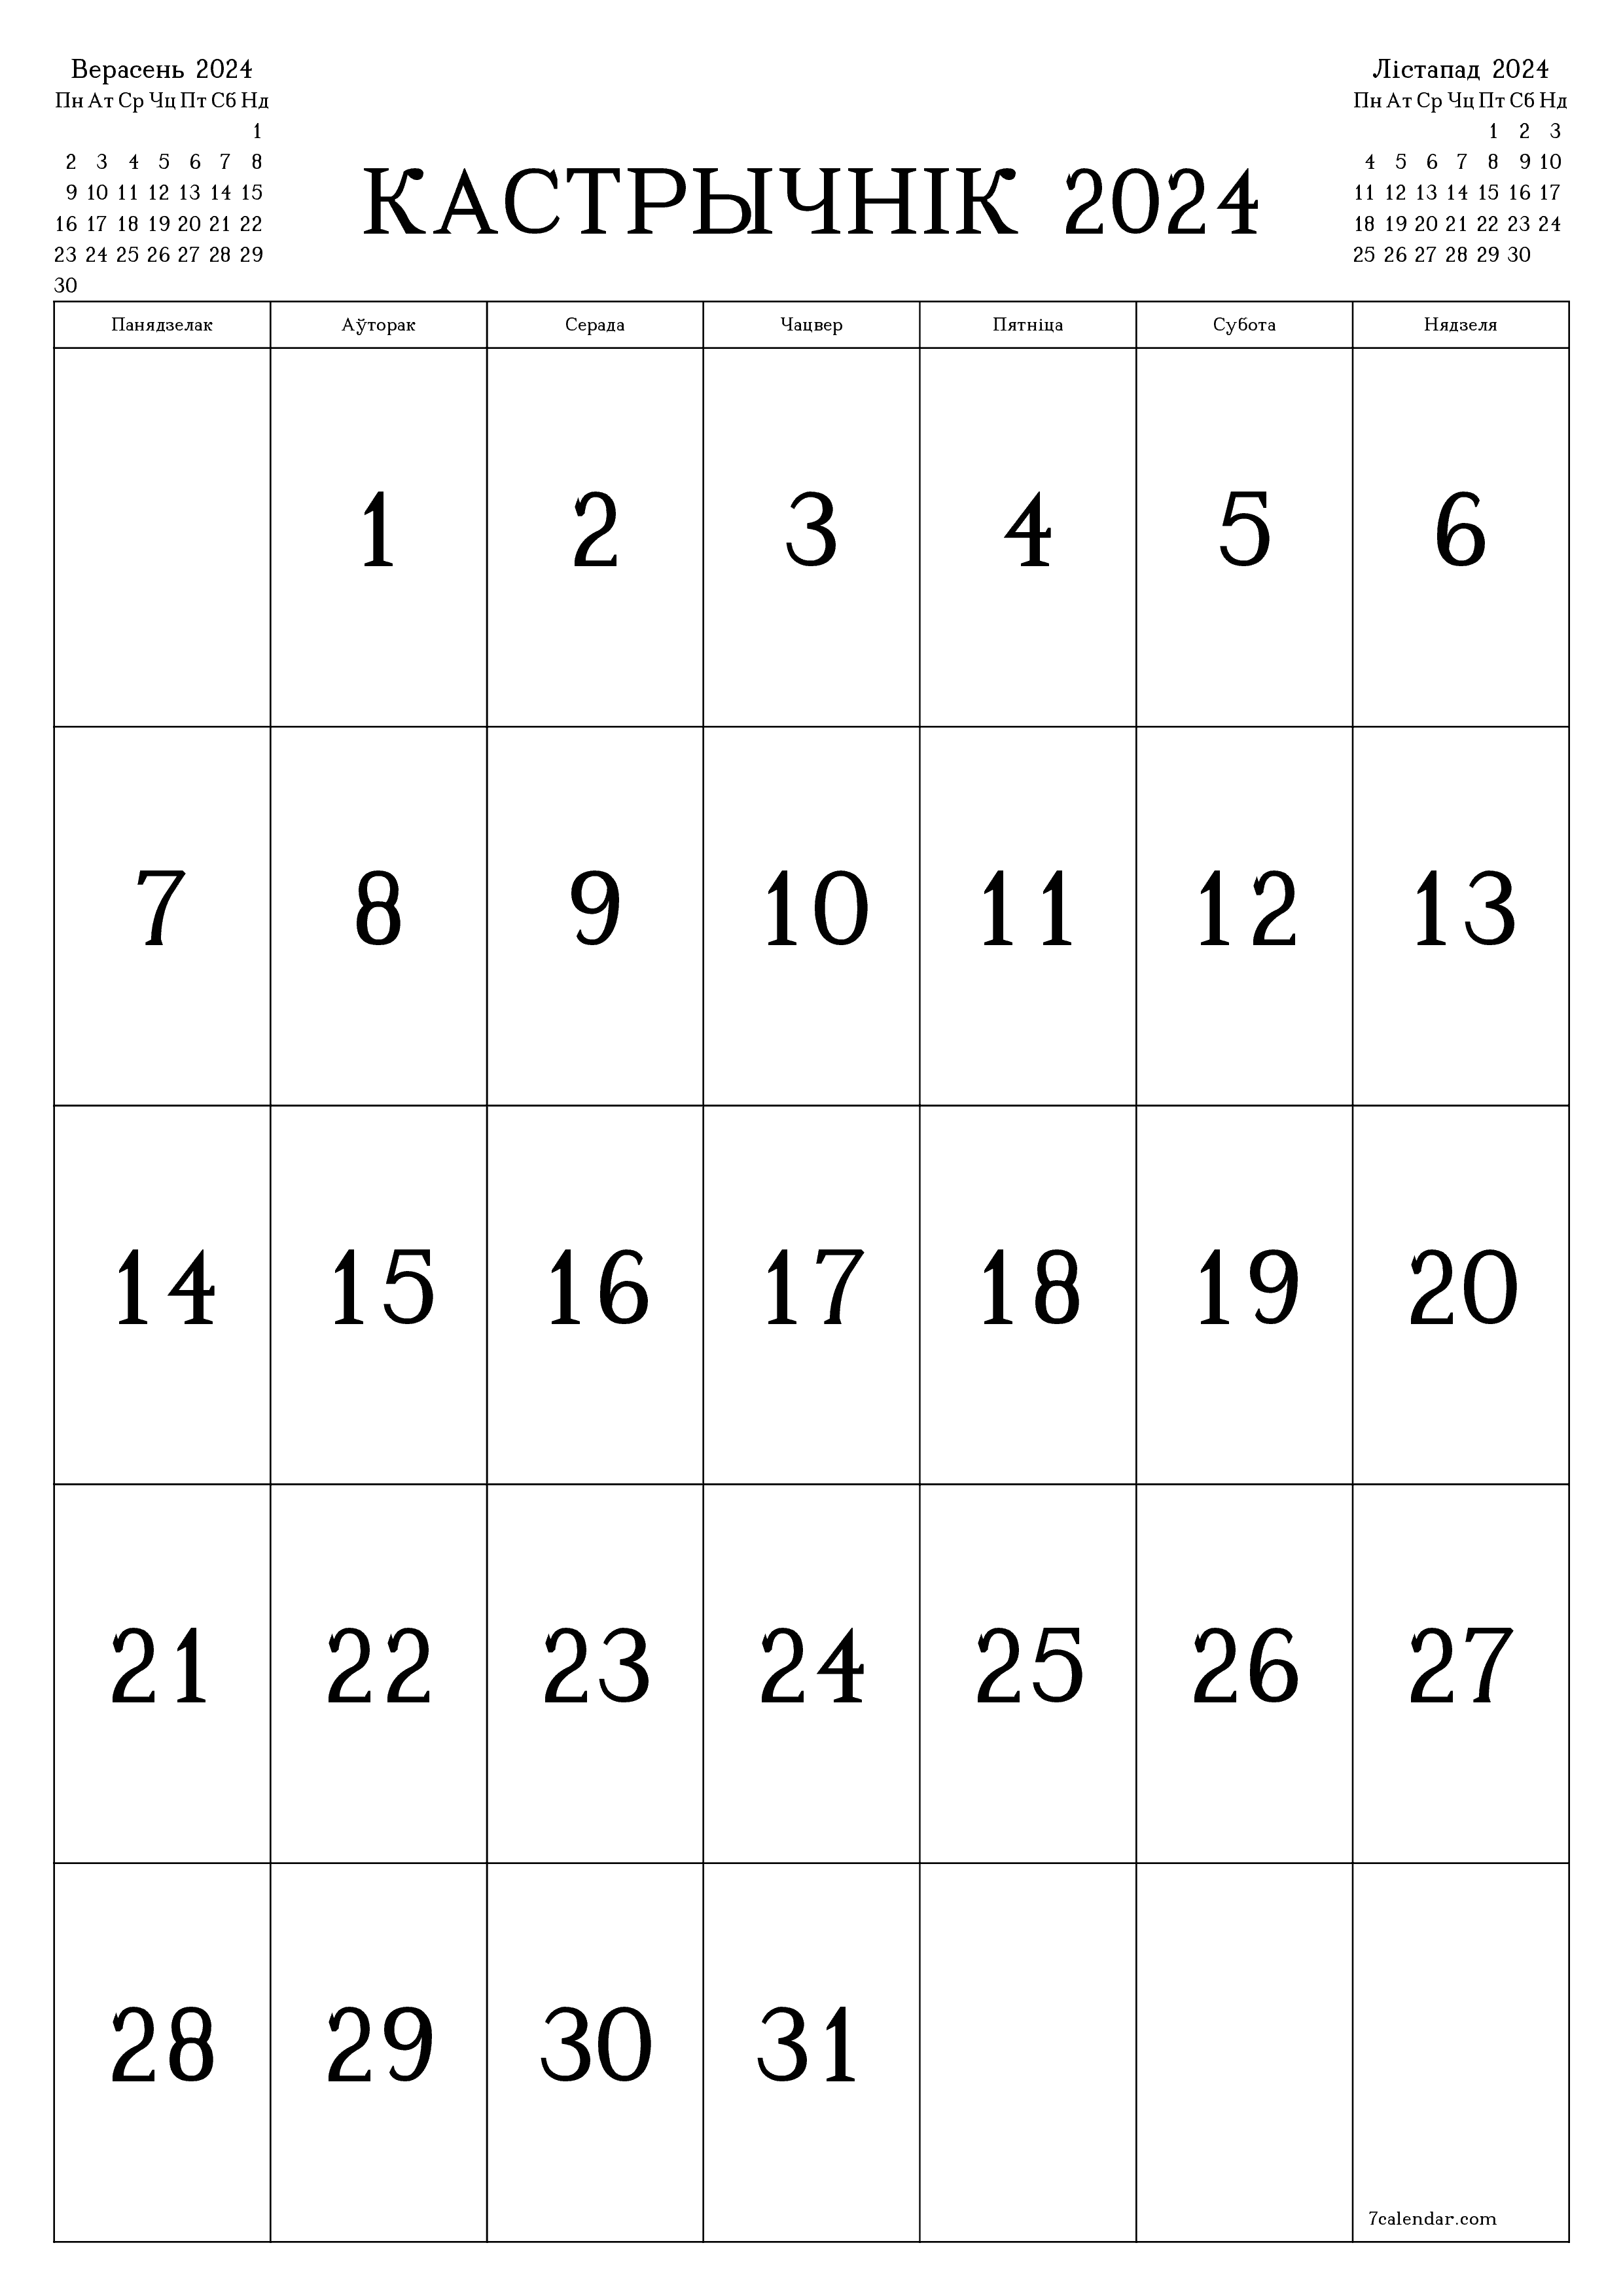  для друку насценны шаблон календара бясплатны вертыкальны Штомесячны каляндар Кастрычнік (Каст) 2024